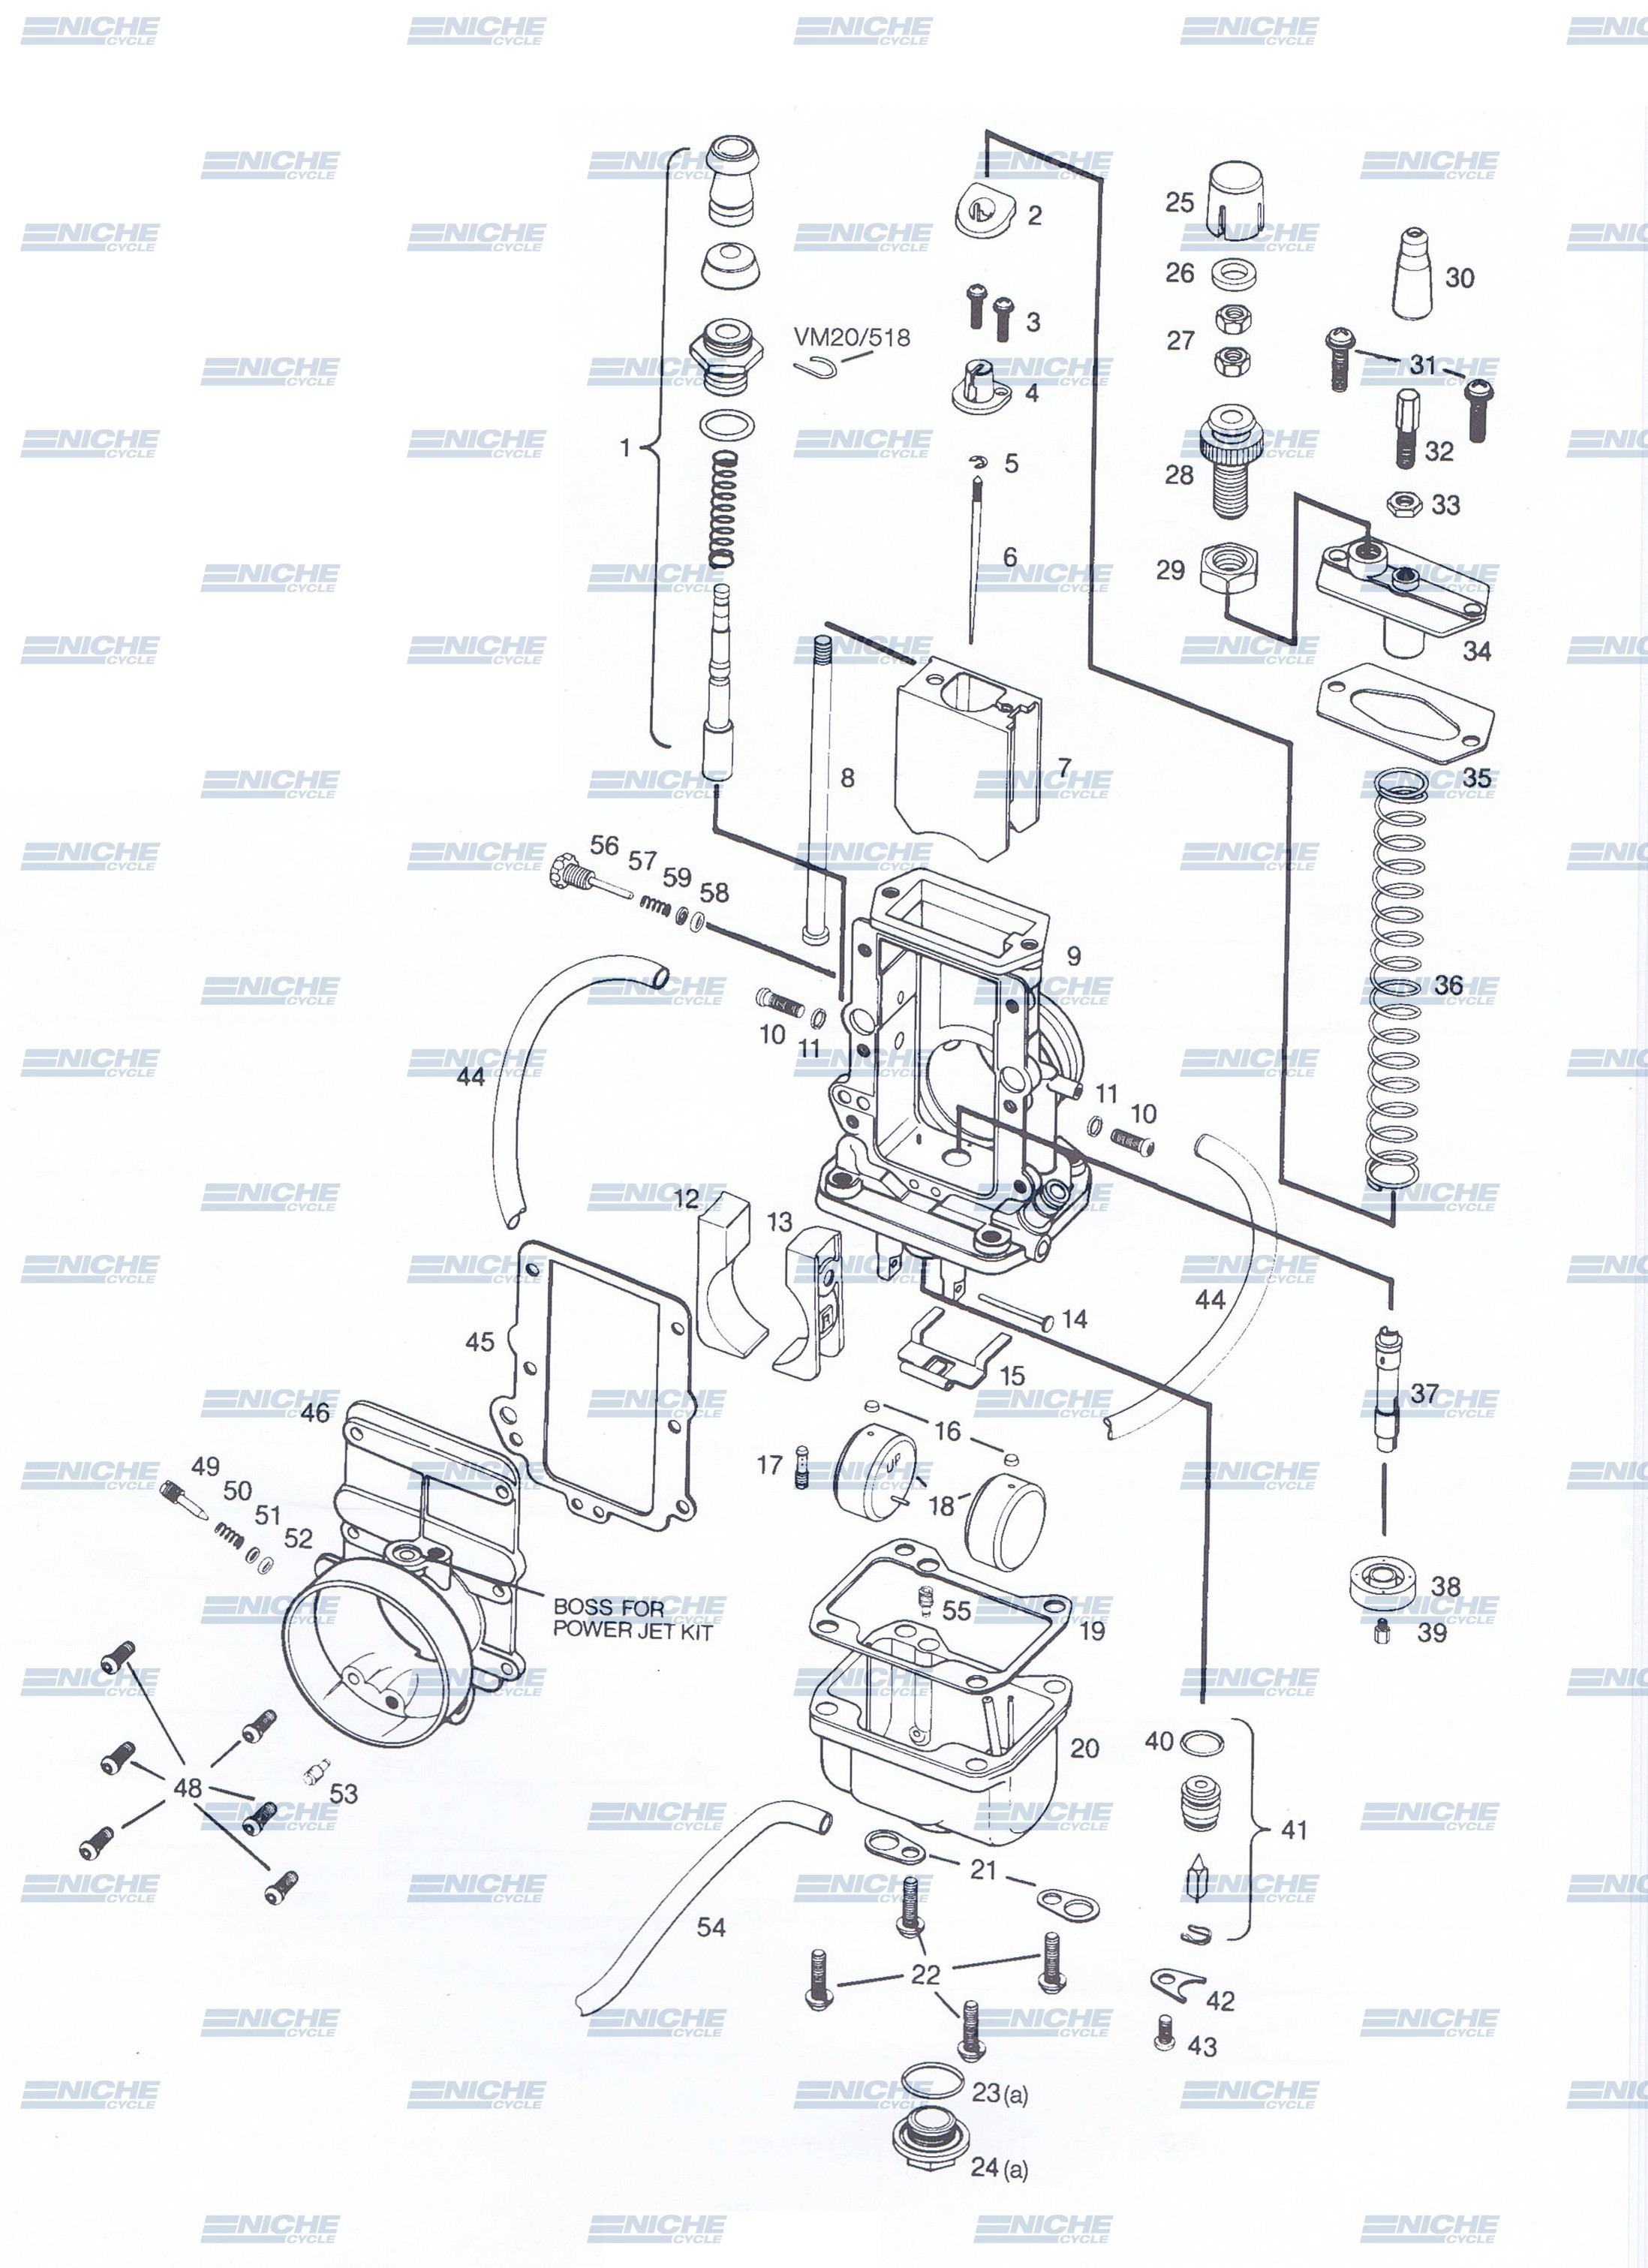 Mikuni TM38-1 Exploded View - Replacement Parts Listing TM38-1_parts_list